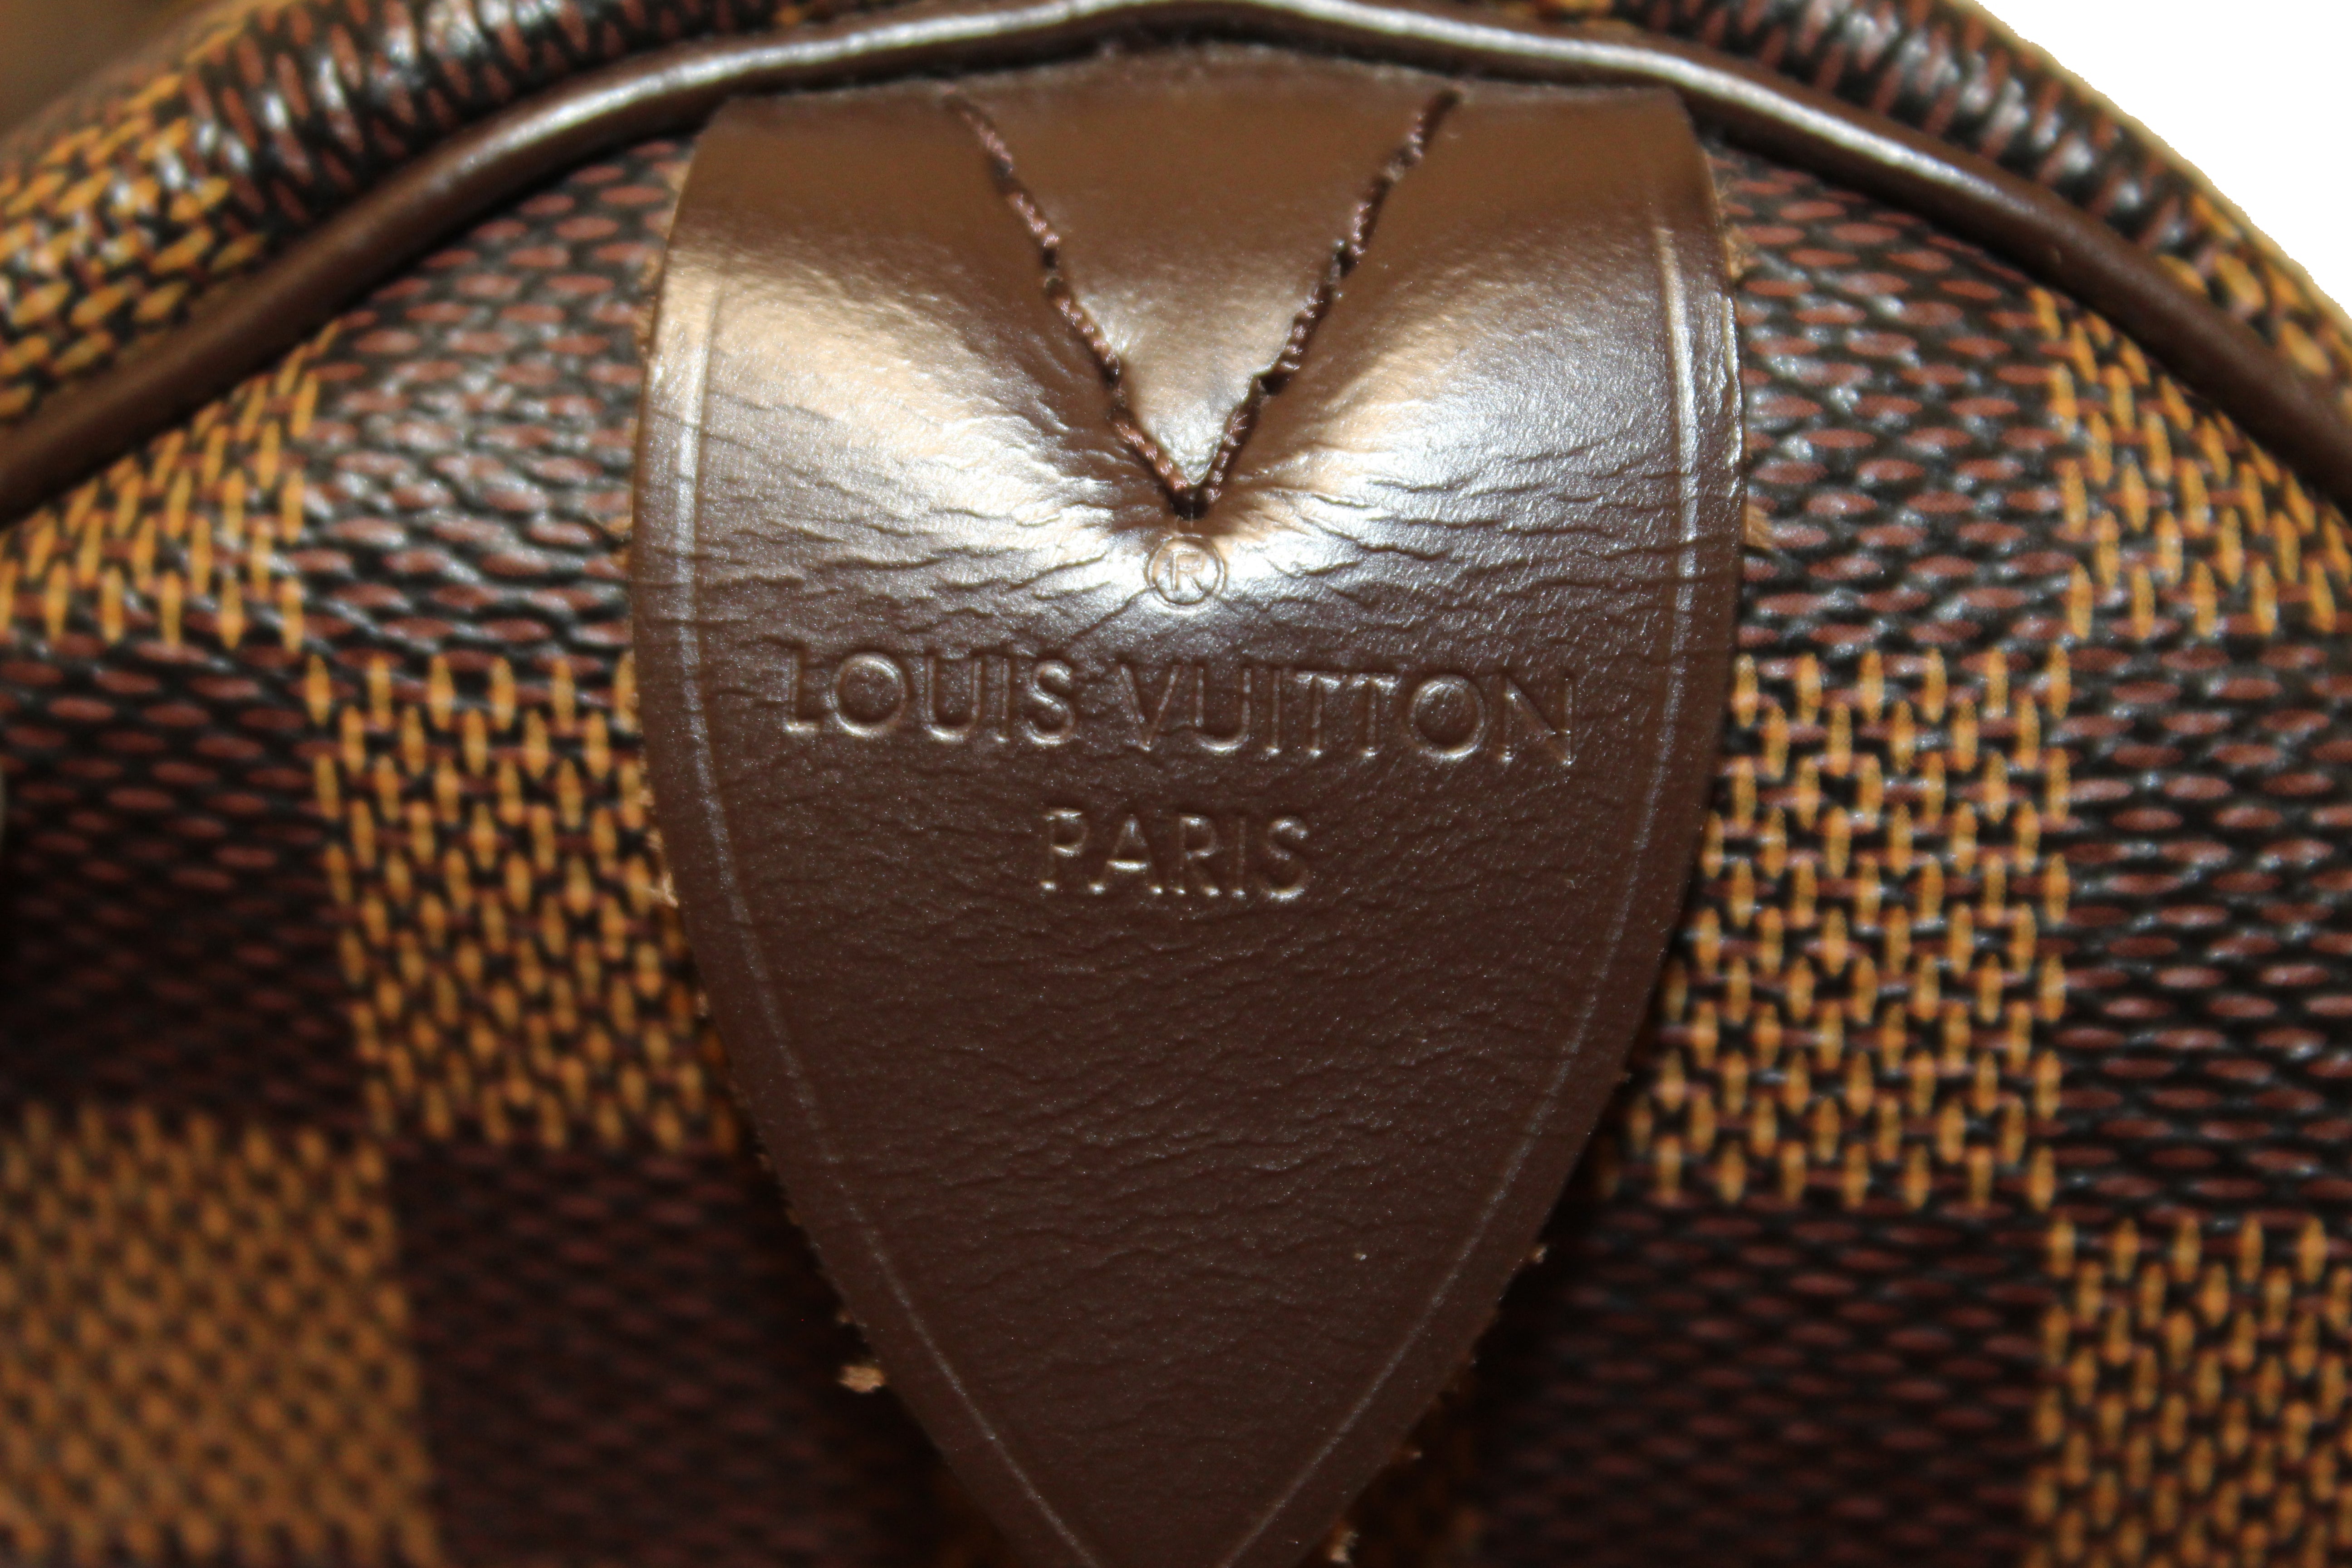 LOUIS VUITTON Authentic Speedy 35 Damier Ebene Satchel Handbag DU3150  France